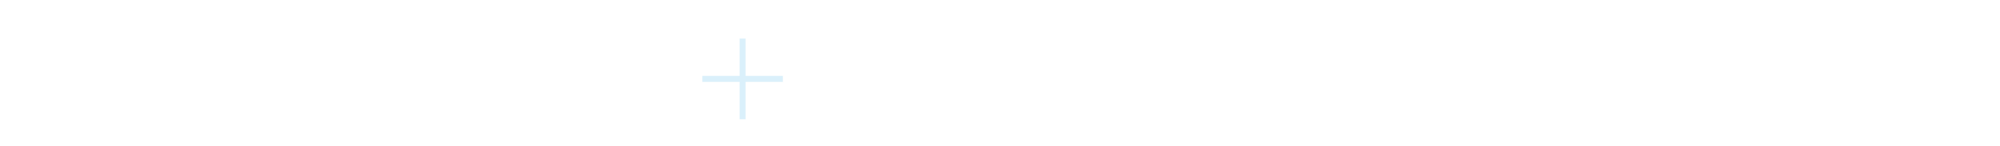 Orium and Fluentcommerce logos